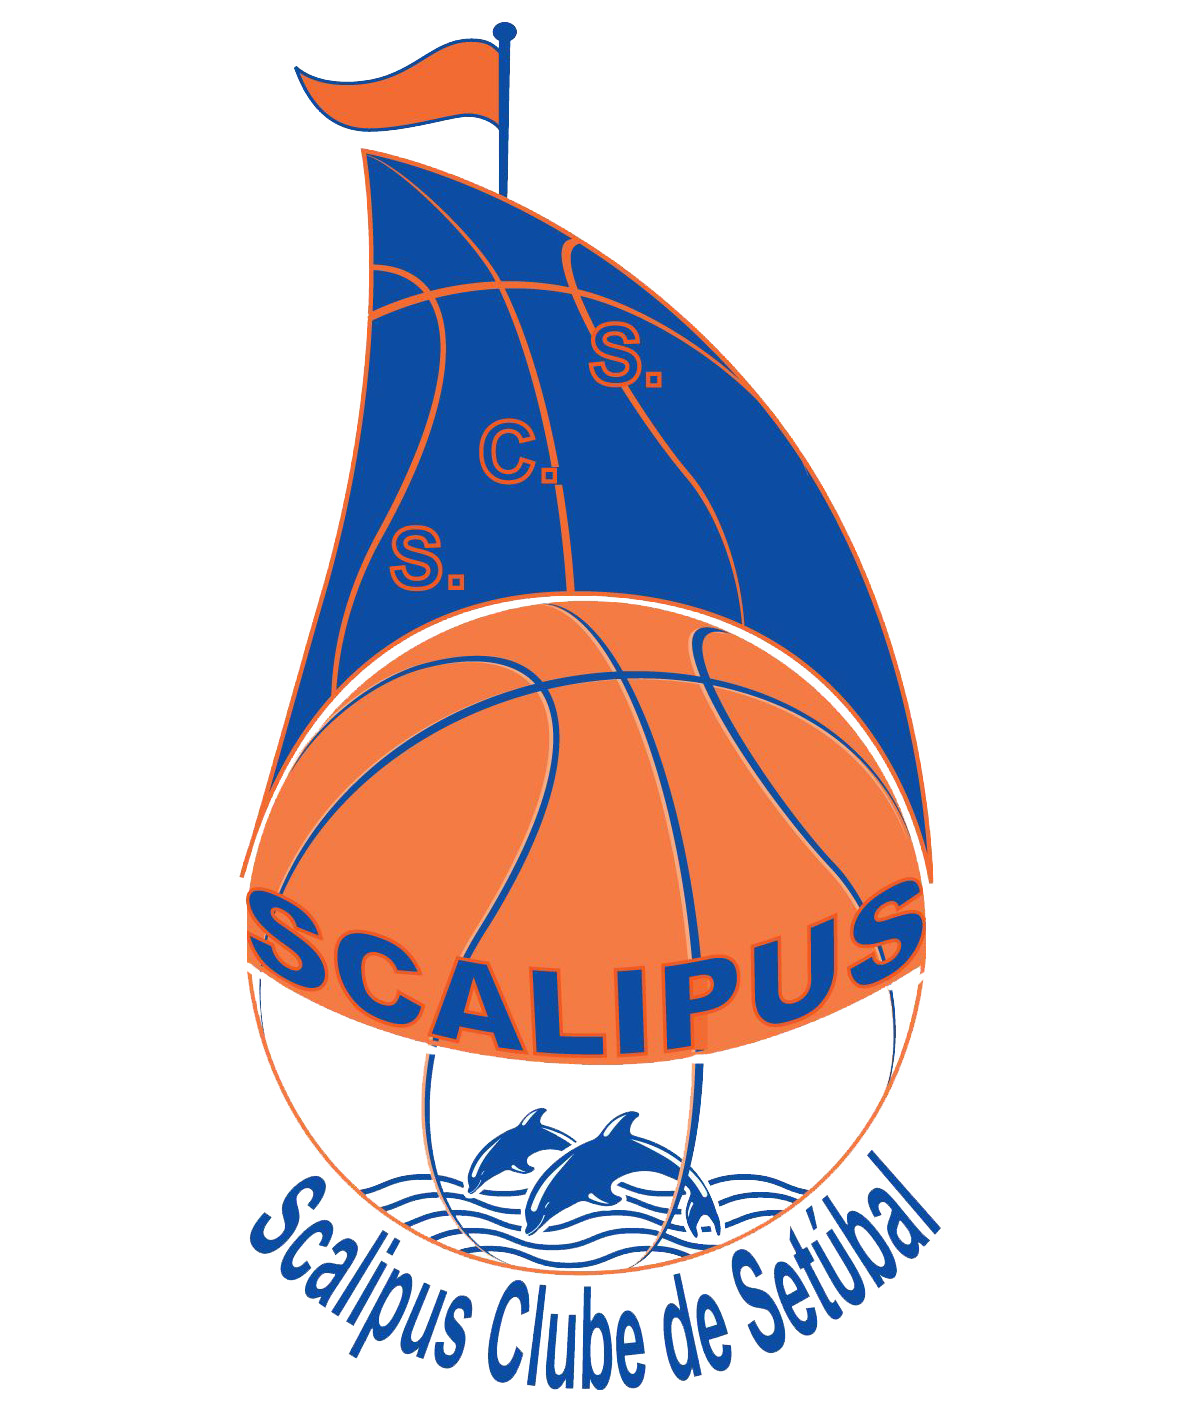 Scalibasket Club Associação